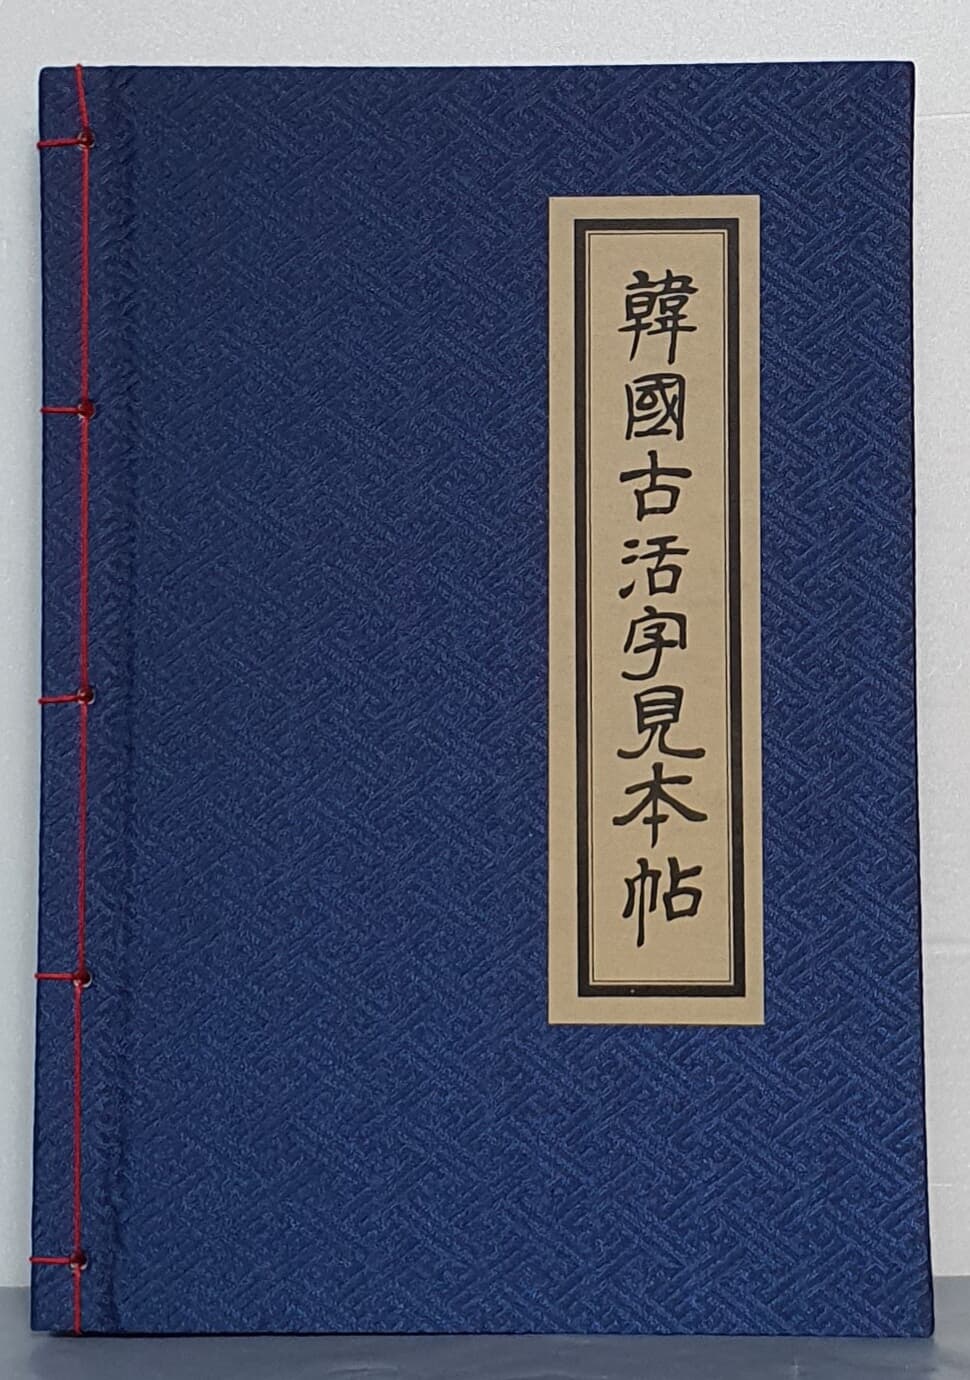 韓國古活字見本帖 한국고활자견본첩 (1973 초판영인본) 